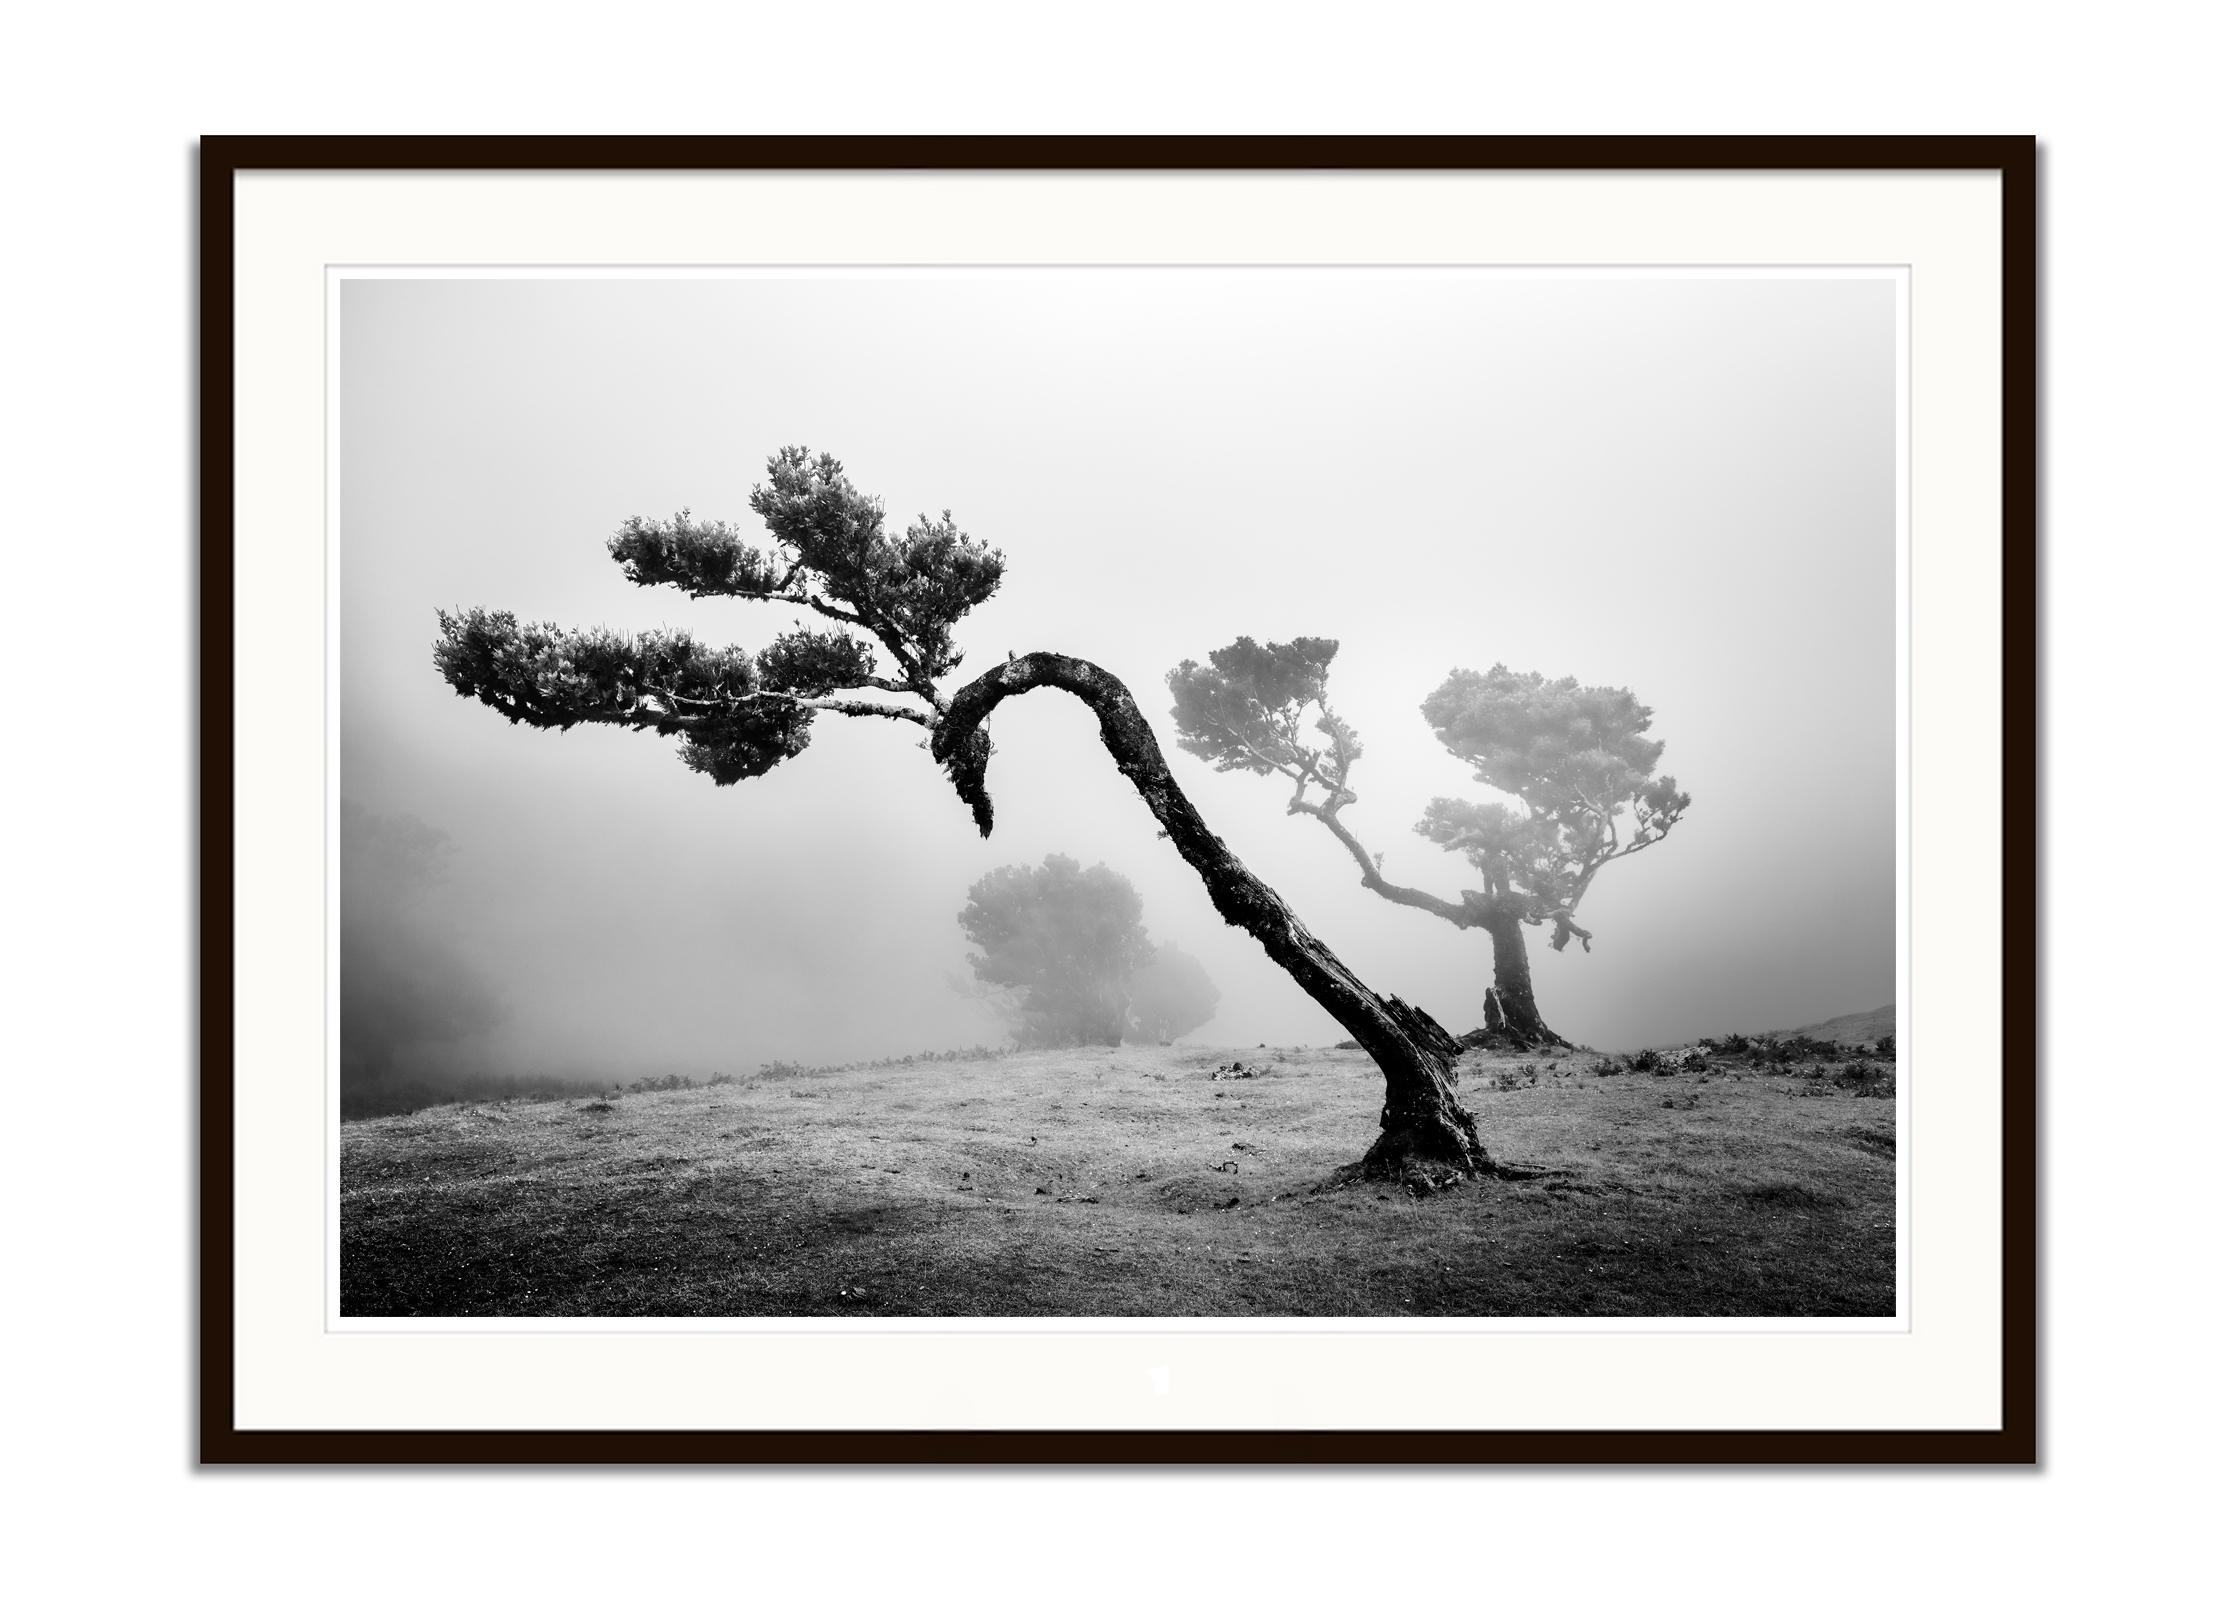 Antiker Laurisilva-Wälder, geschwungener Baum, Schwarz-Weiß-Fotografie, Landschaft (Grau), Landscape Photograph, von Gerald Berghammer